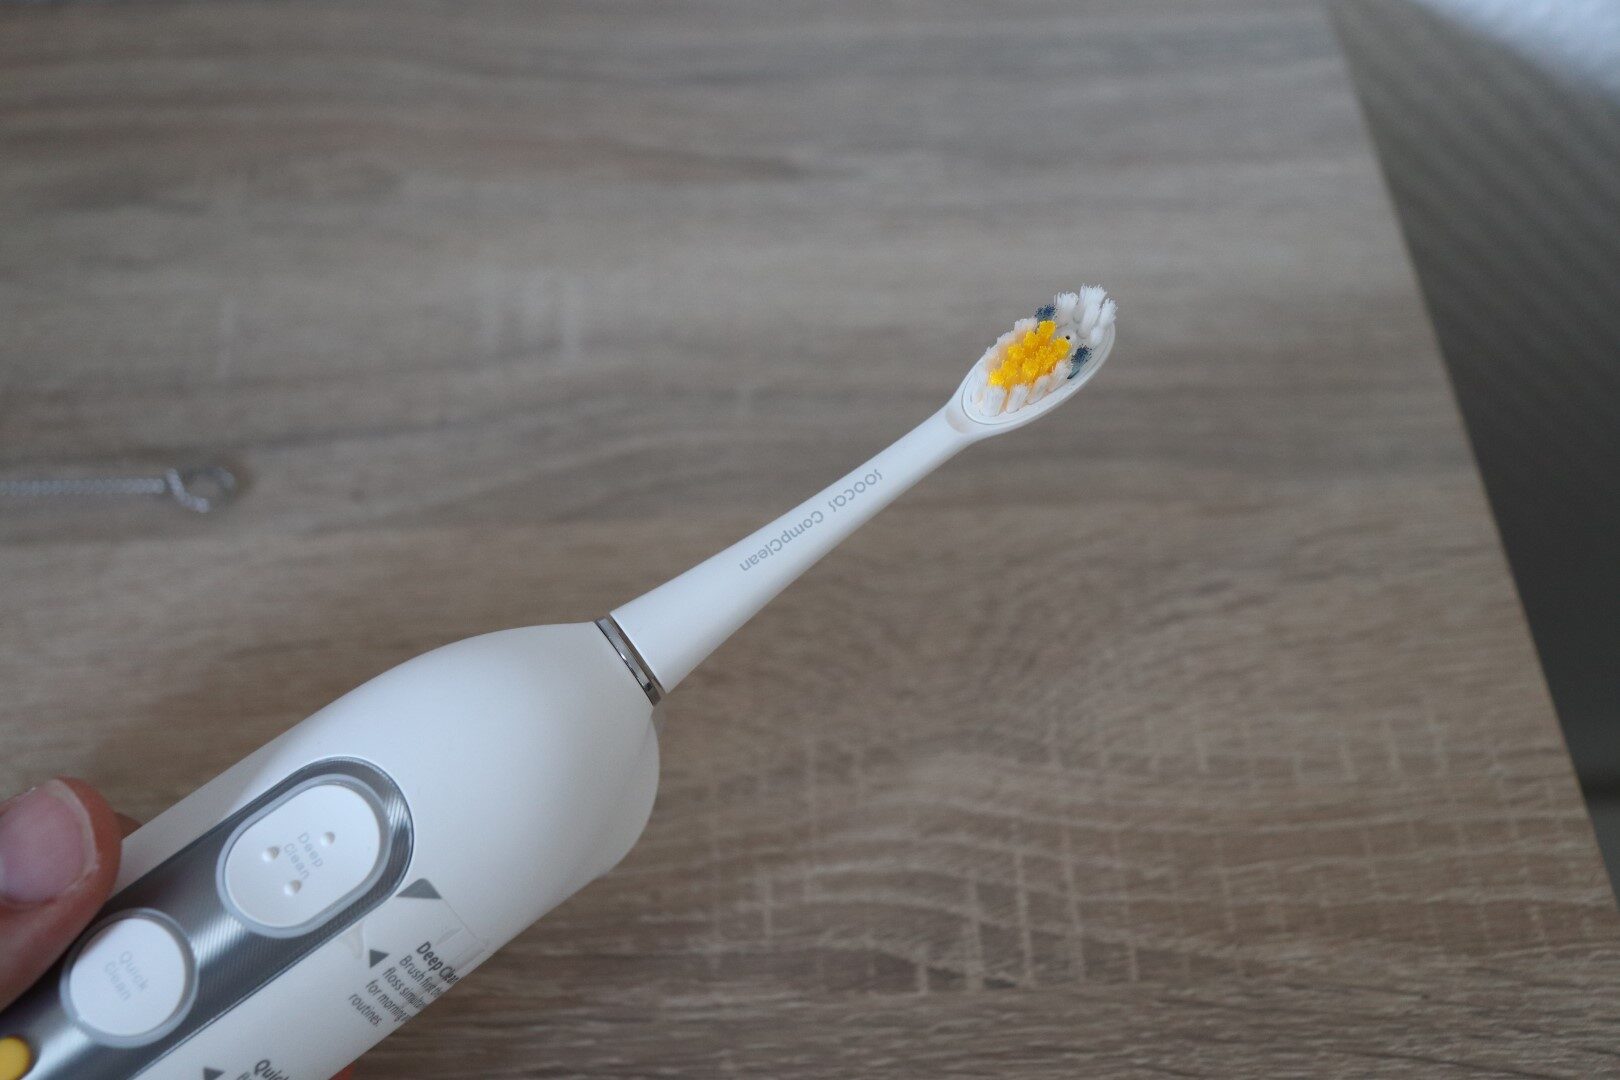 Testbericht zur elektrischen Zahnbürste Soocas Neos: Schallbürste + Wasserstrahl